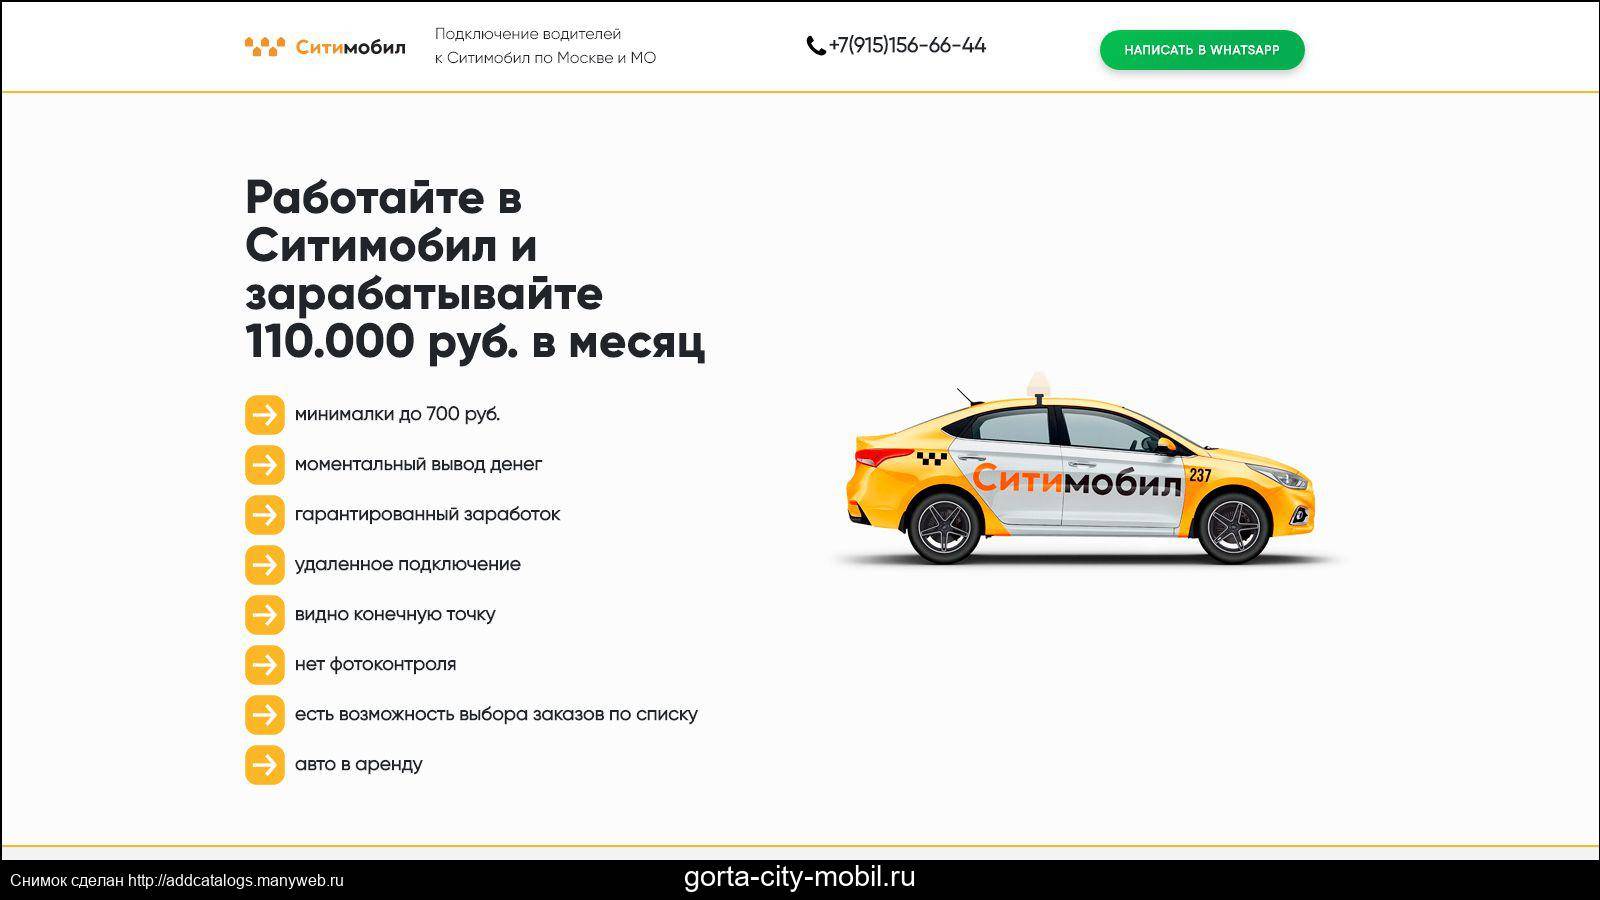 Работа такси отзывы водителей москва. Набор водителей Сити мобил. Сити мобил такси лого. Водитель такси Сити мобил. Подключение к Ситимобил.